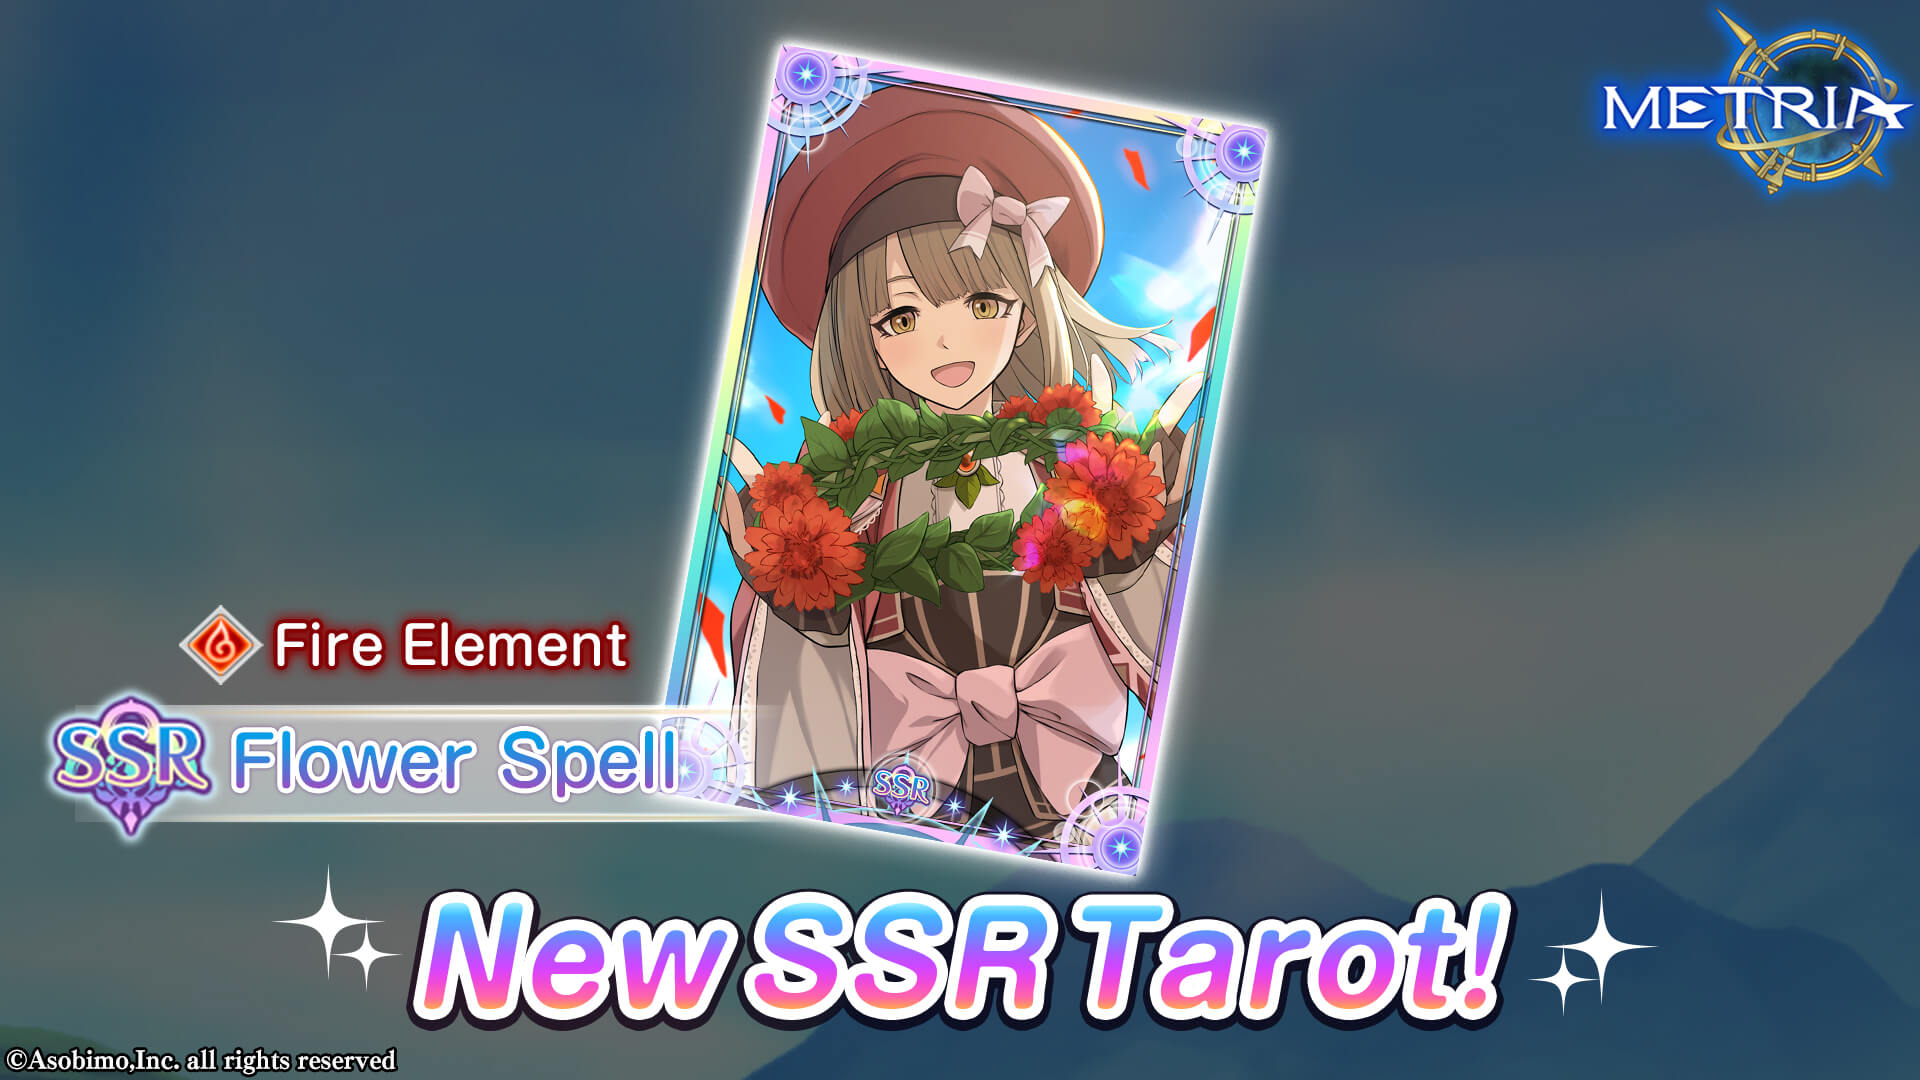 New SSR Tarot: "Flower Spell" Coming Soon!